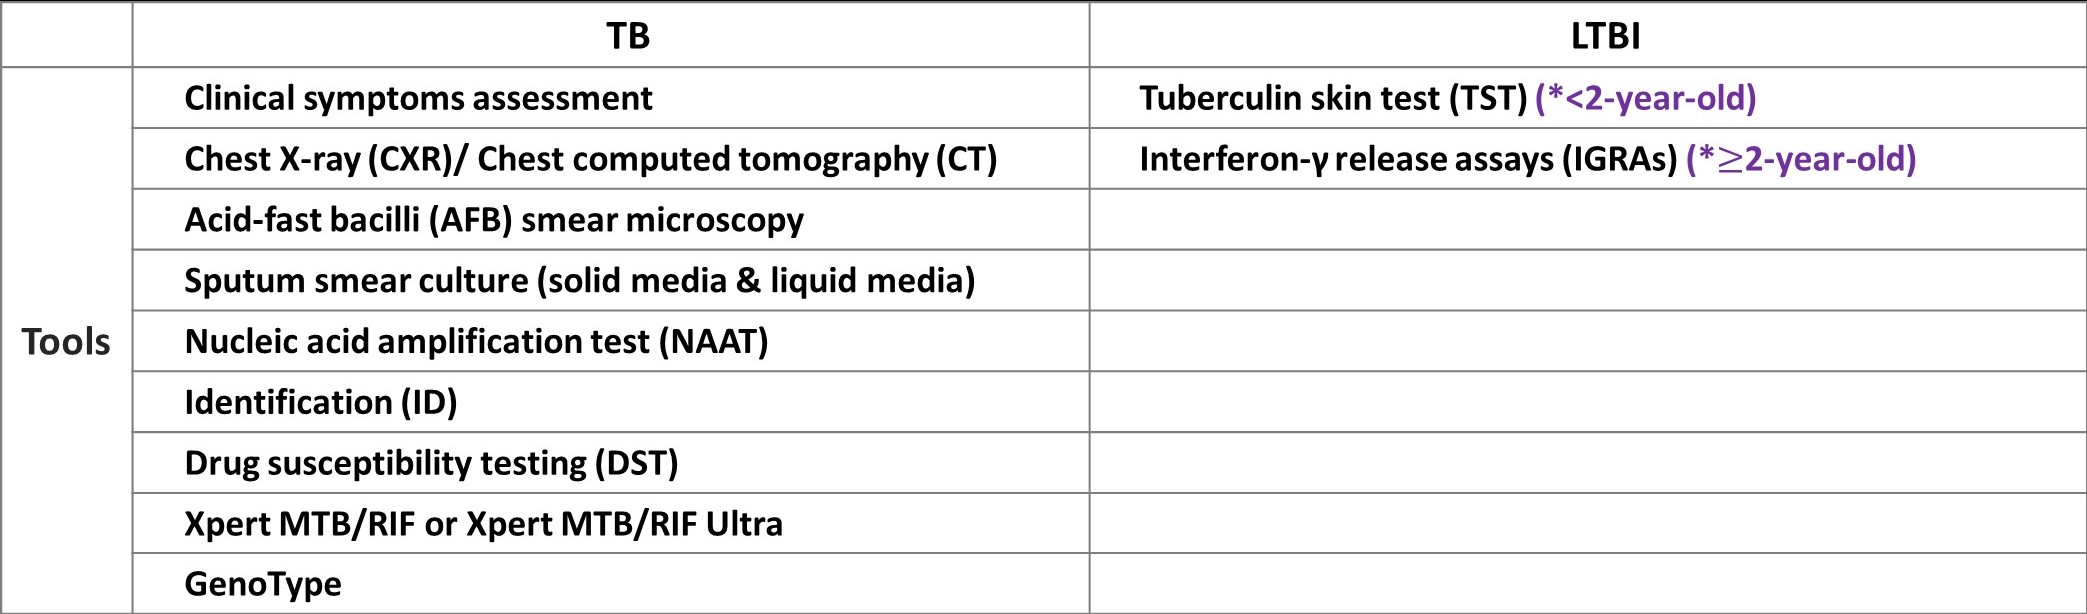 Diagnosis tools of TB/LTBI